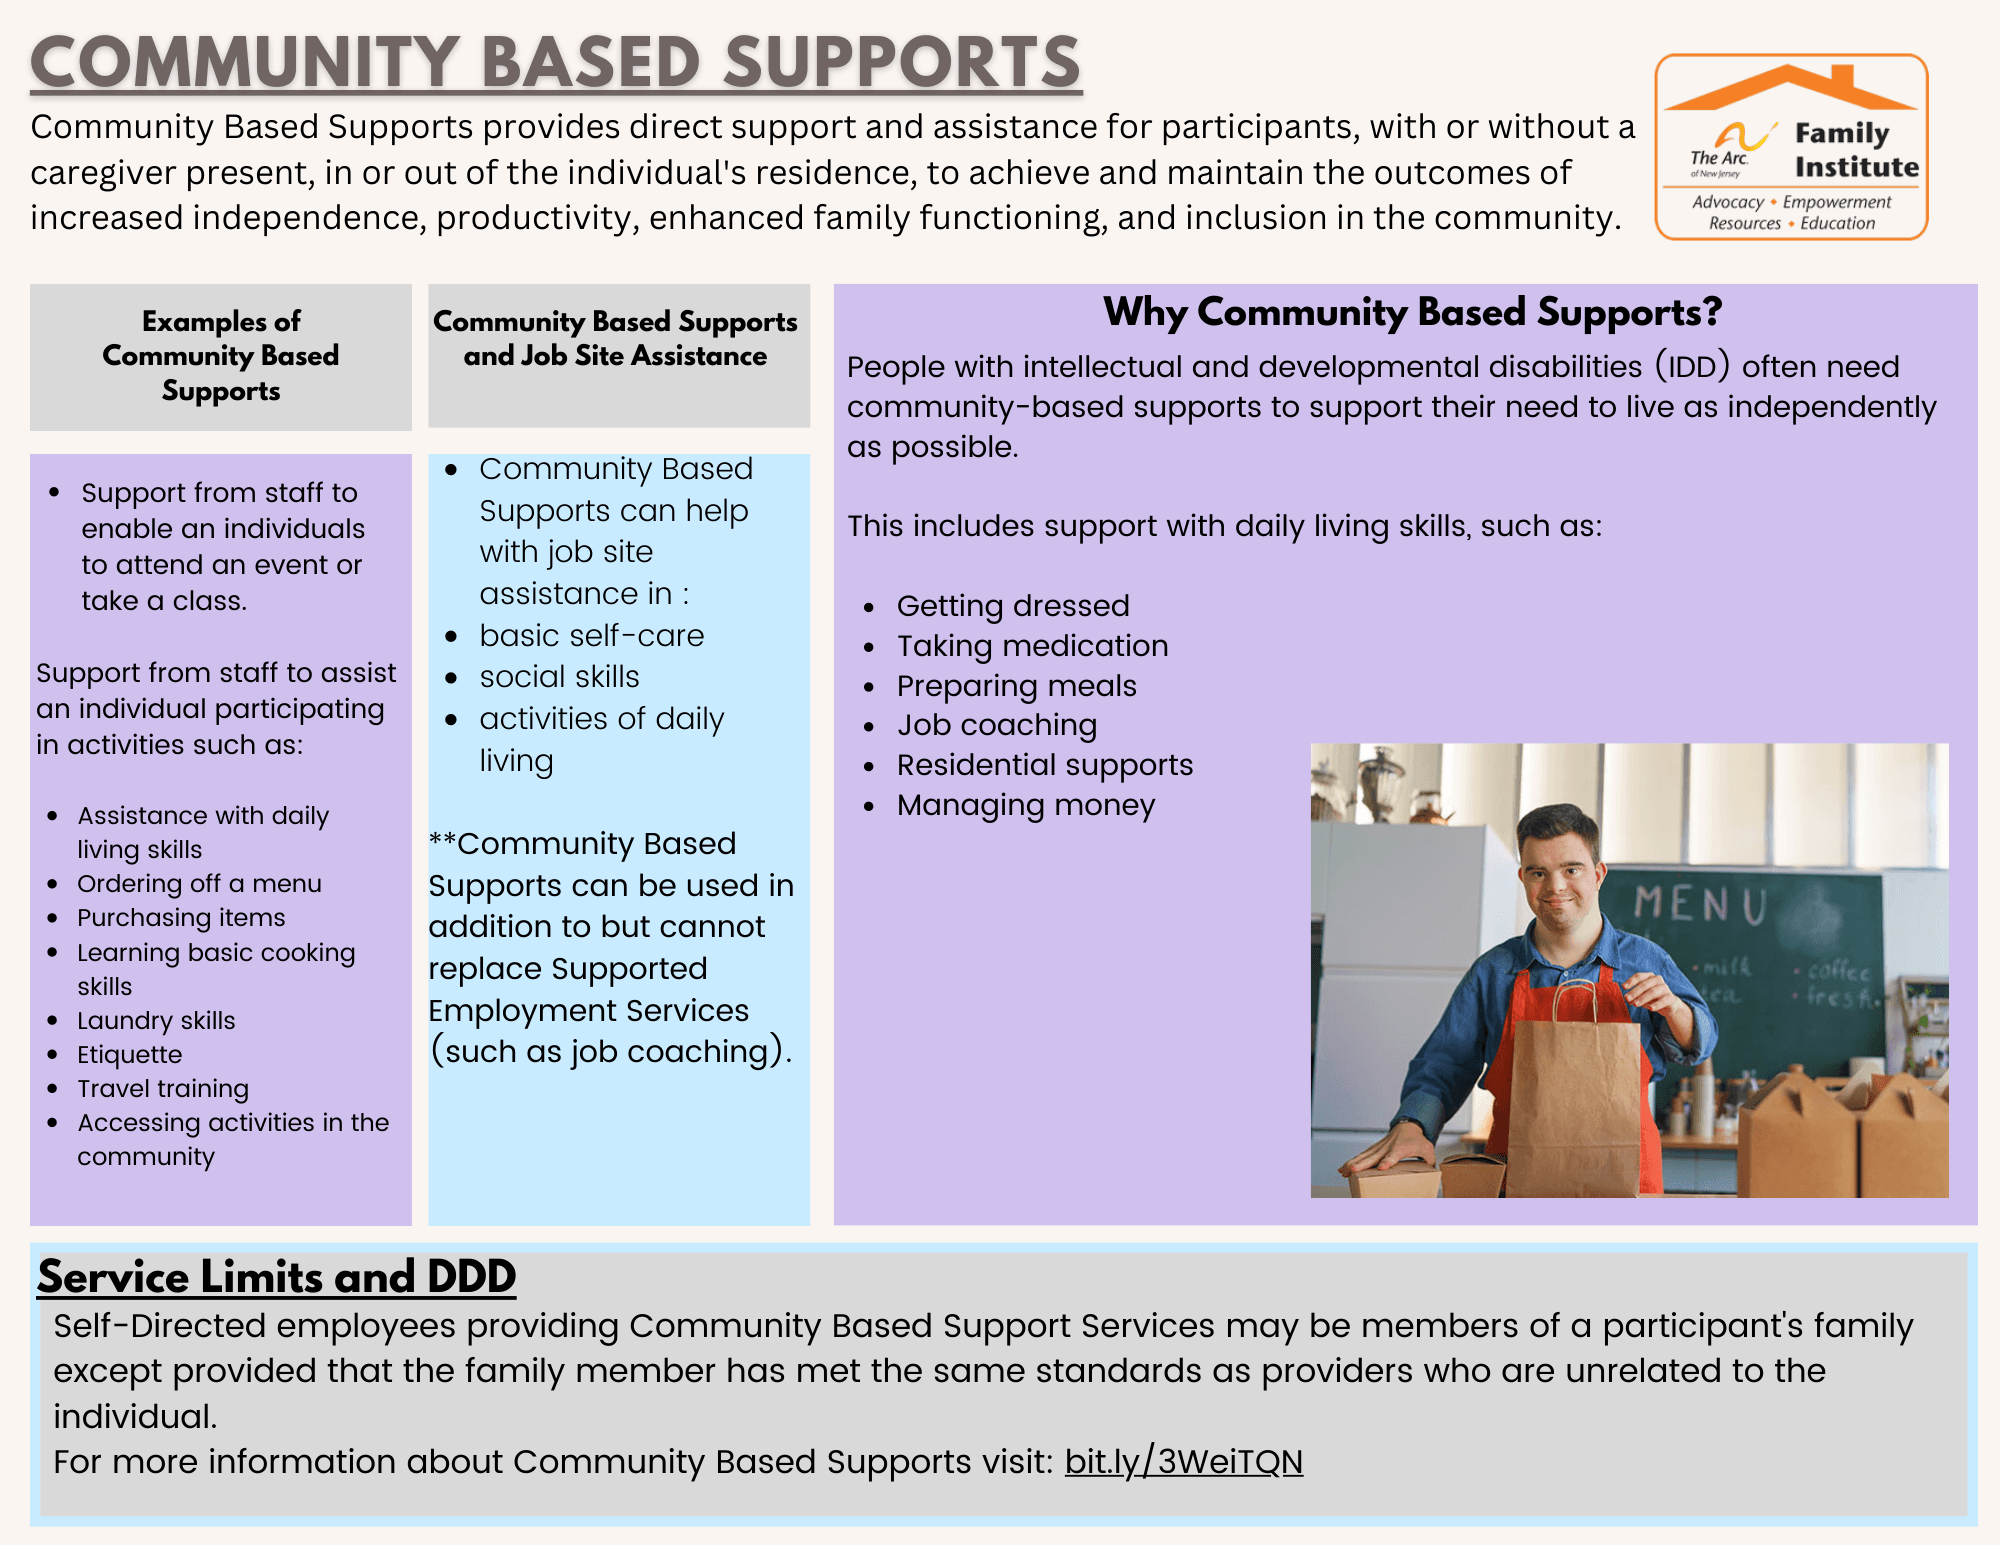 Community Based Supports through DDD